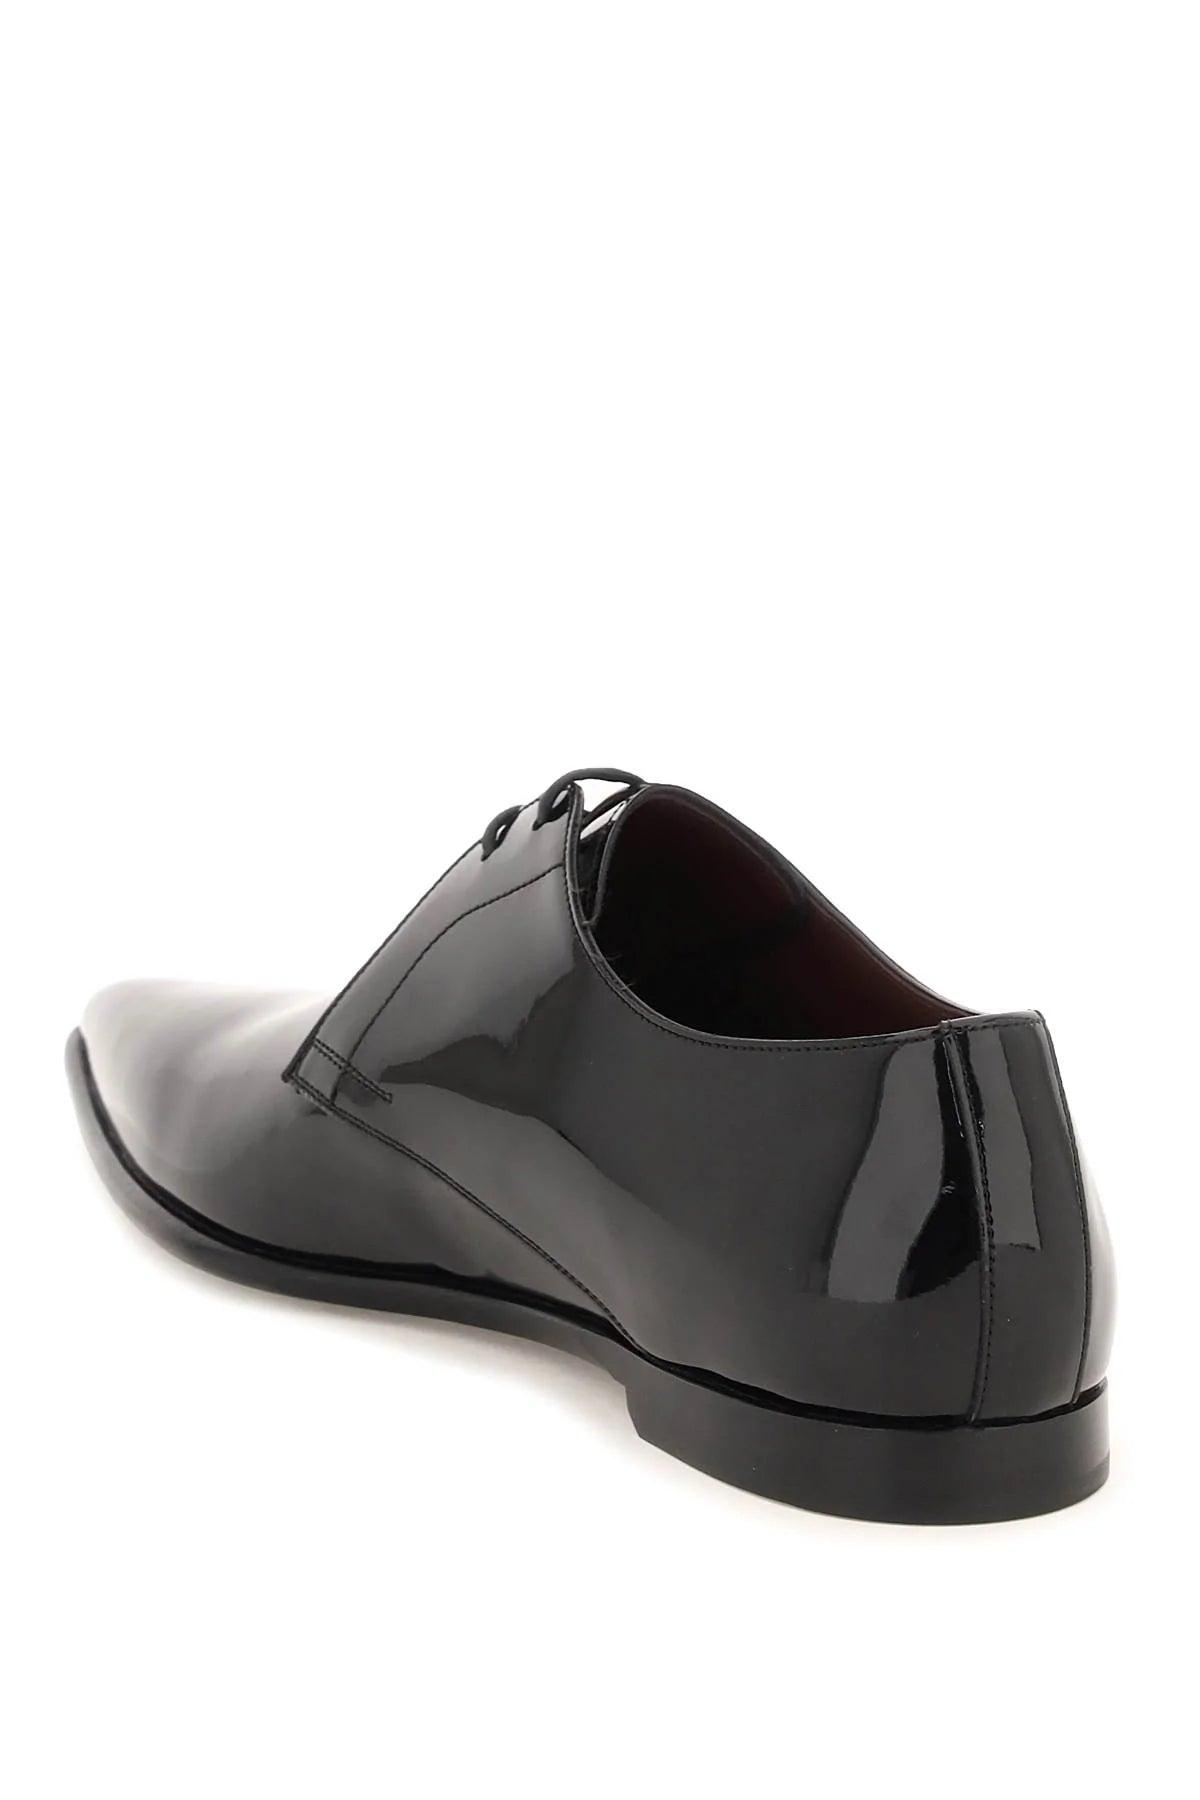 豪華で新しい DOLCE Men for Shoes Derby Leather Patent GABBANA & ドレスシューズ・革靴